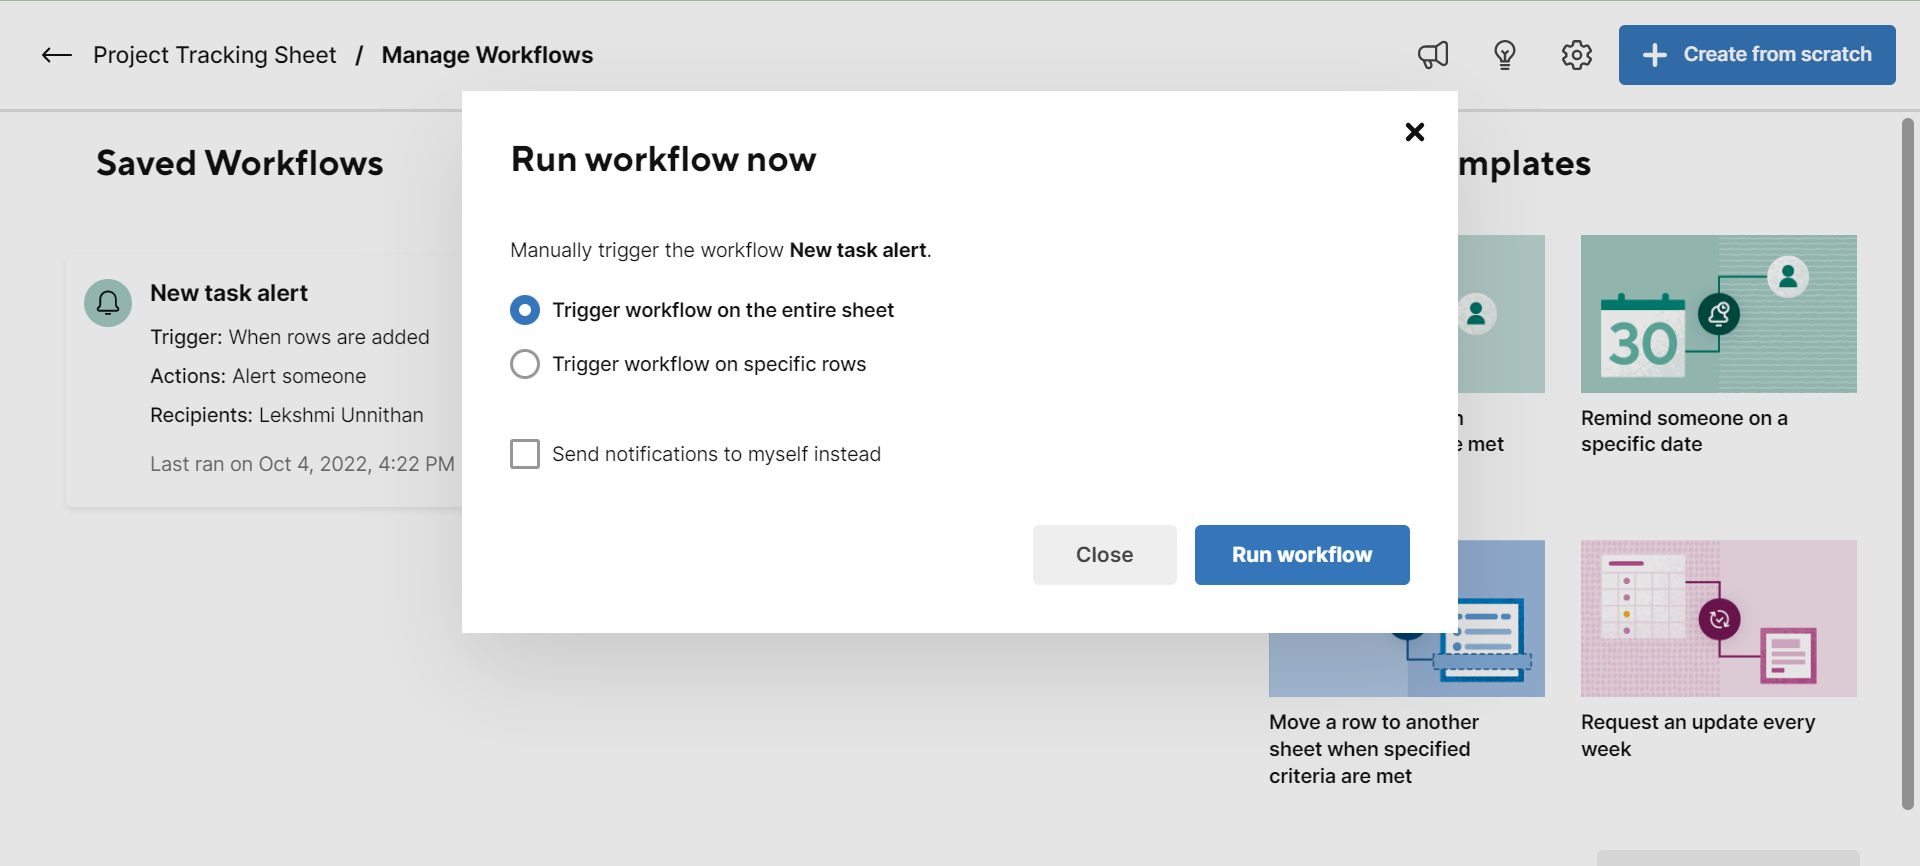 Run Workflow Now